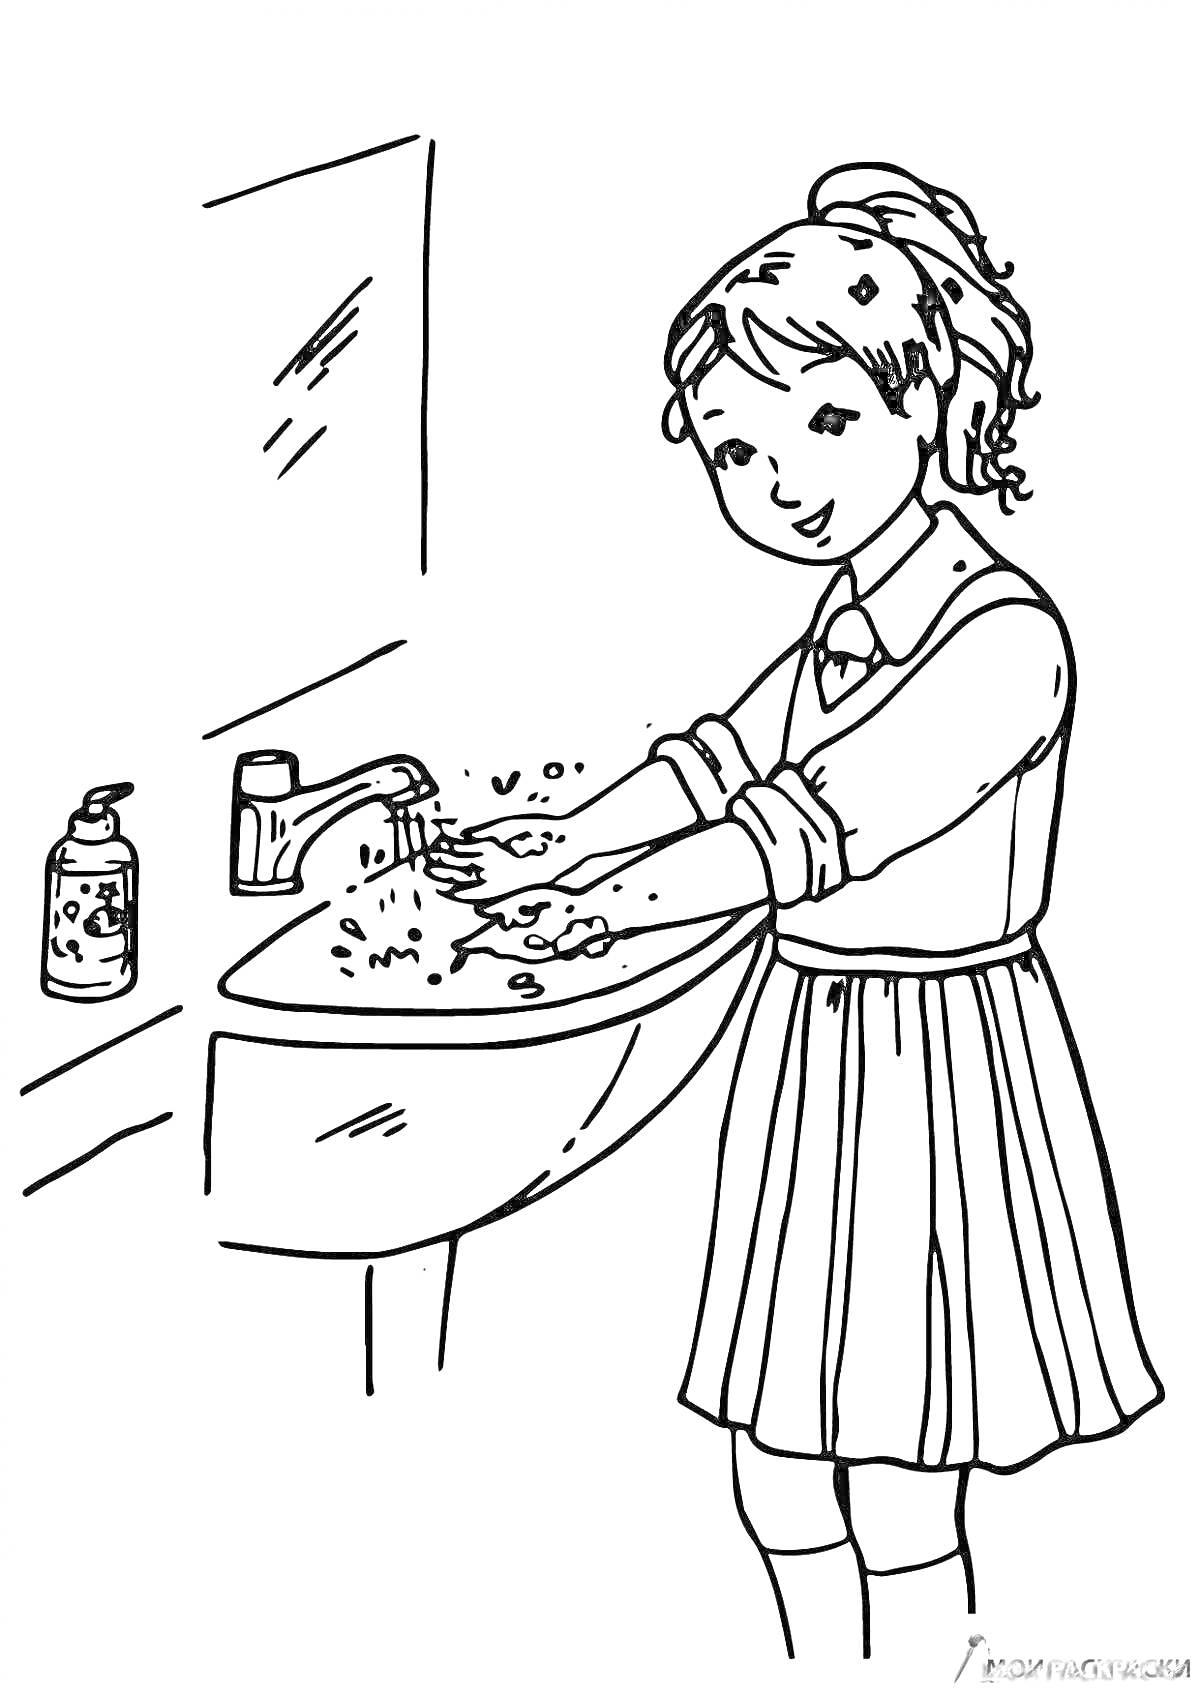 Раскраска девочка моет руки у раковины с мылом